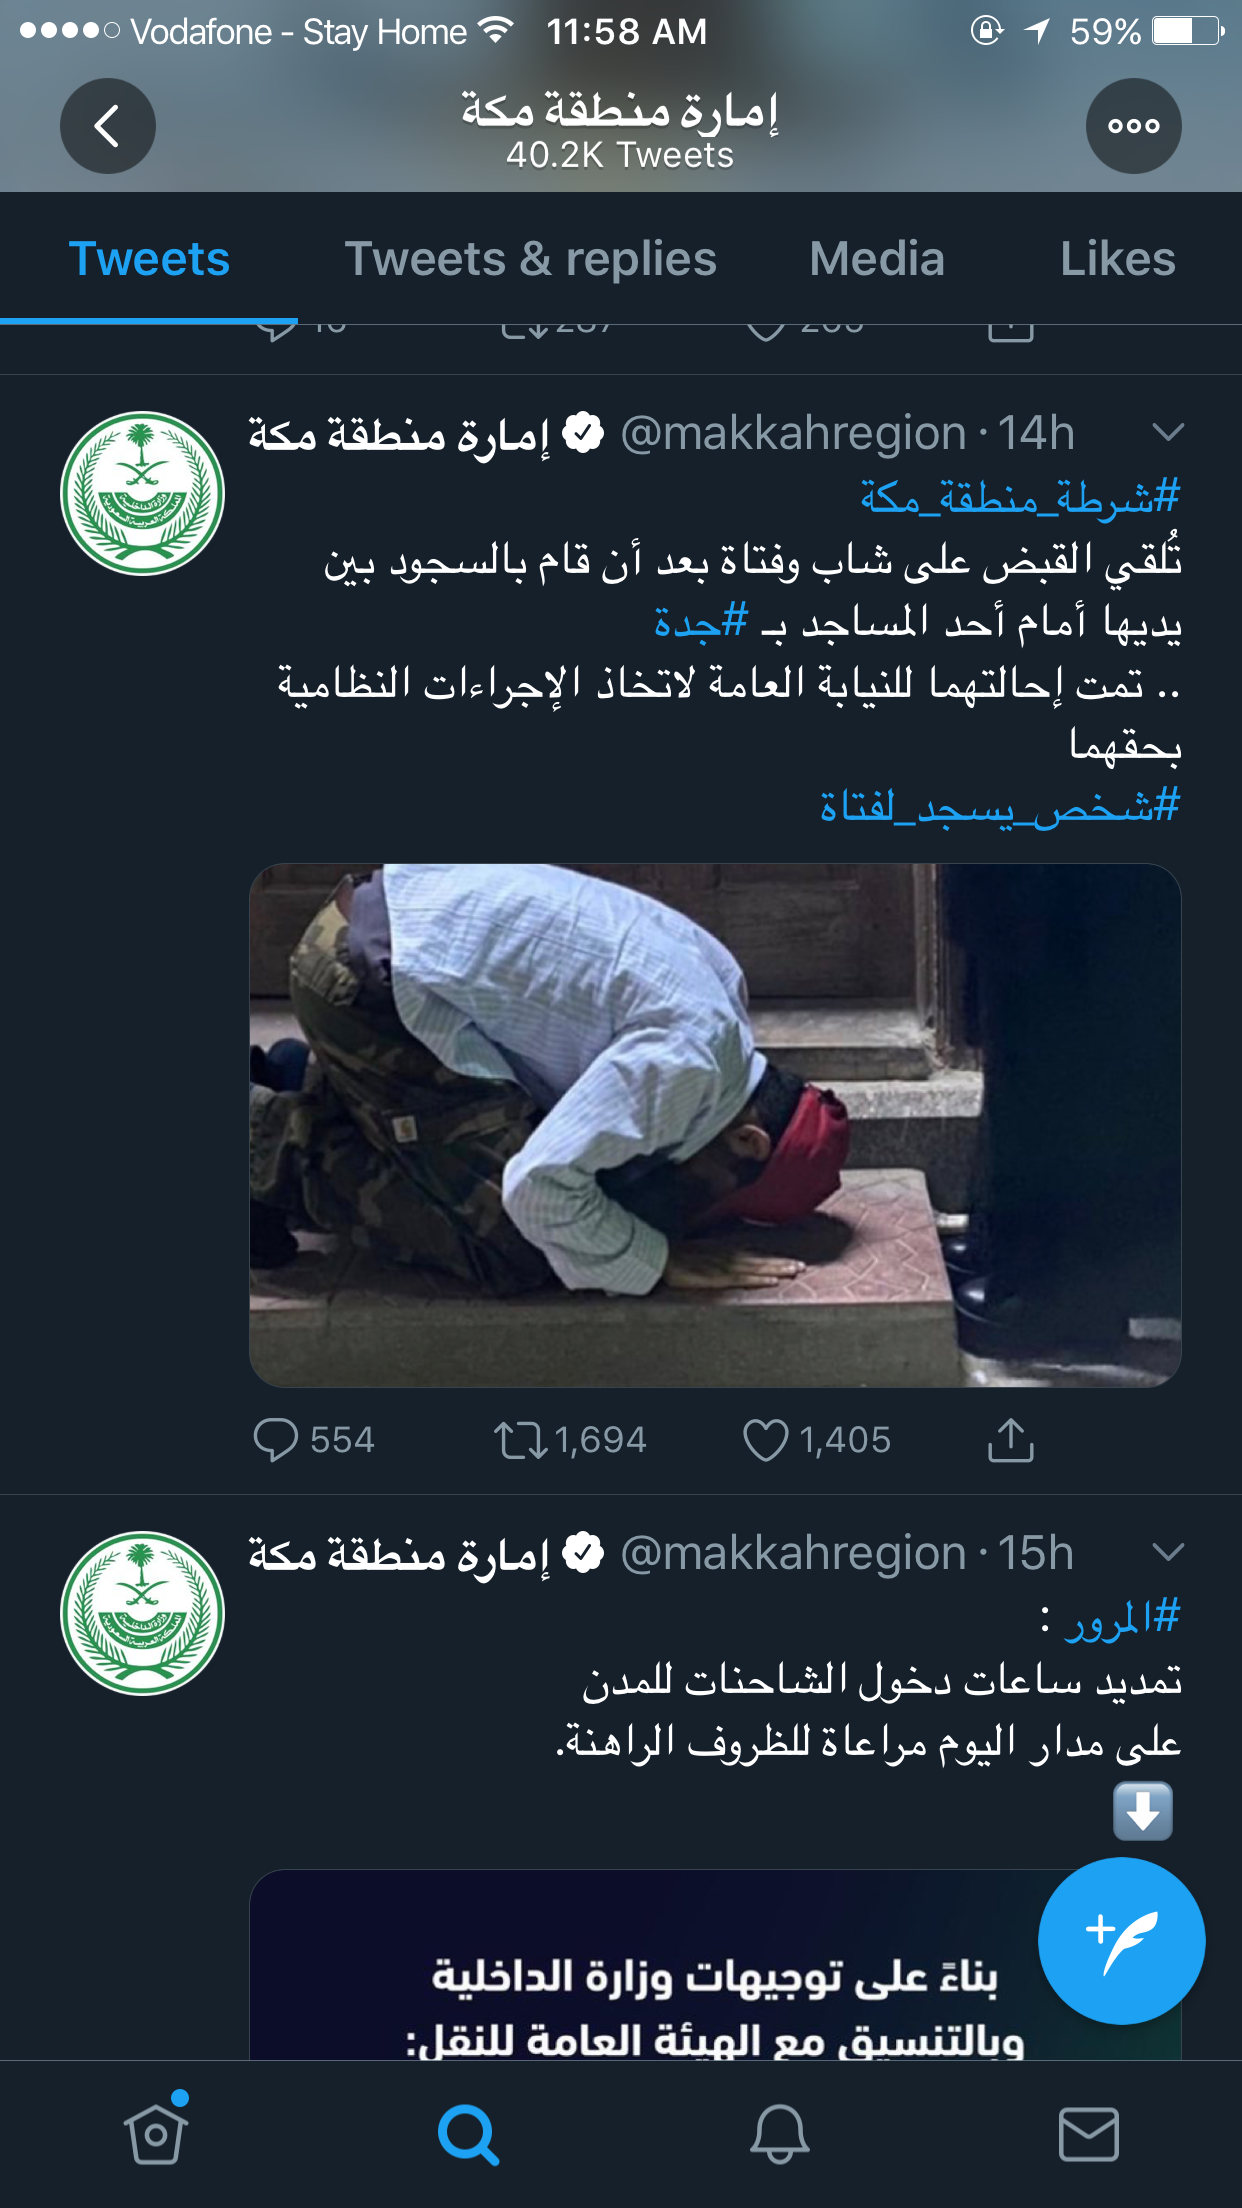 شاب سعودي يسجد لفتاة أمام مسجد بالسعودية وأول إجراء قانون من إمارة مكة ضدهم 7